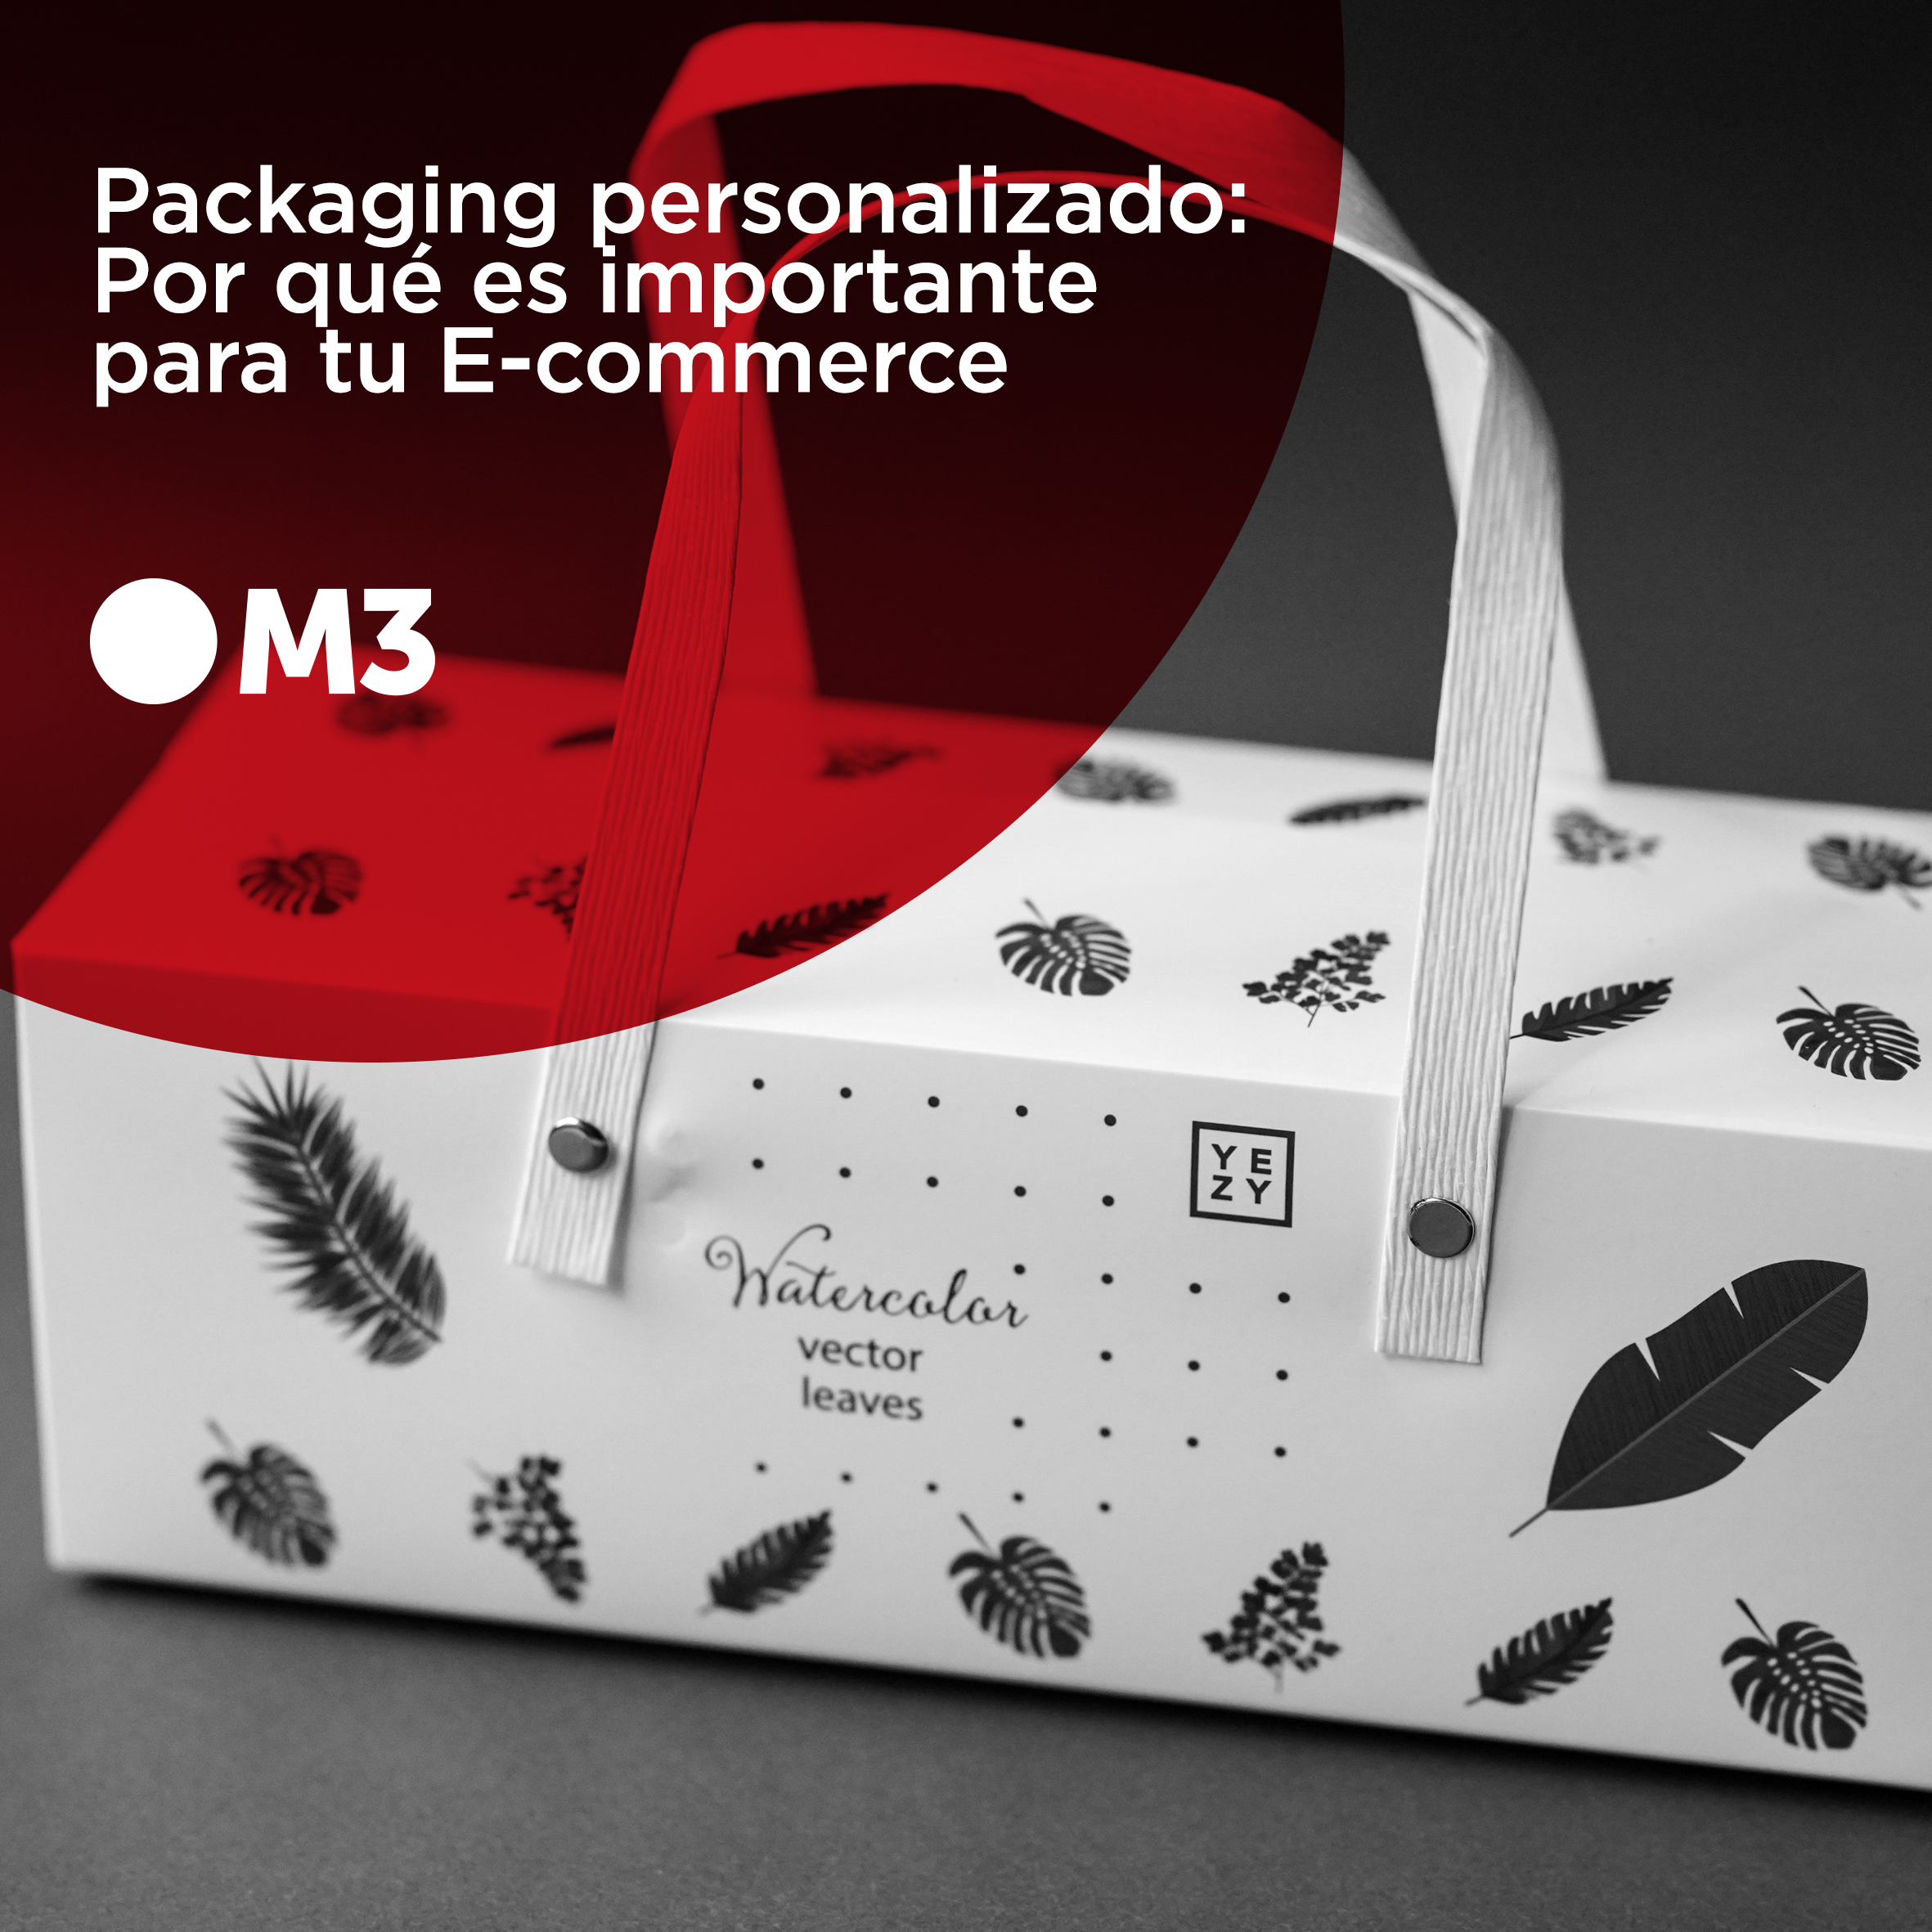 Packaging personalizado: Por qué es importante para tu E-commerce